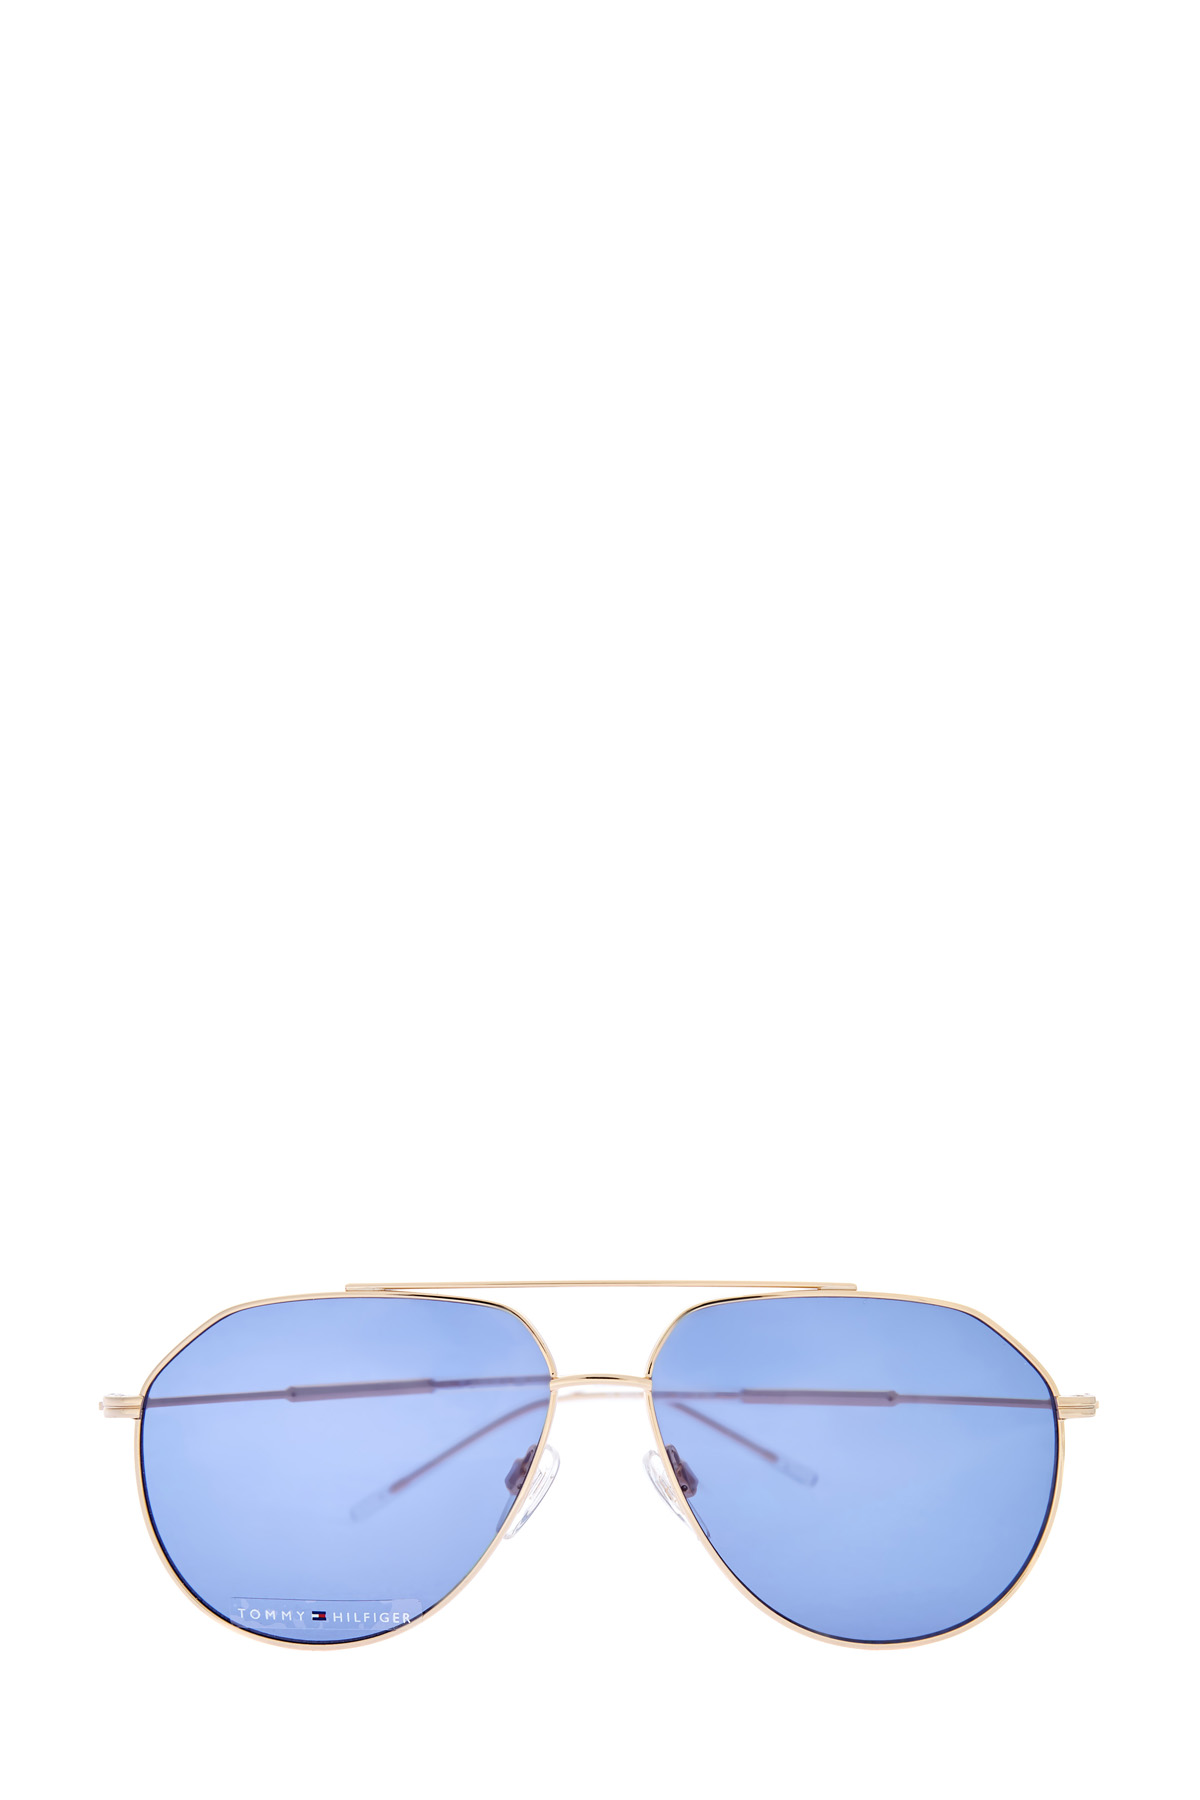 Очки-авиаторы в тонкой золотистой оправе с двойным мостом TOMMY HILFIGER (sunglasses), размер 40